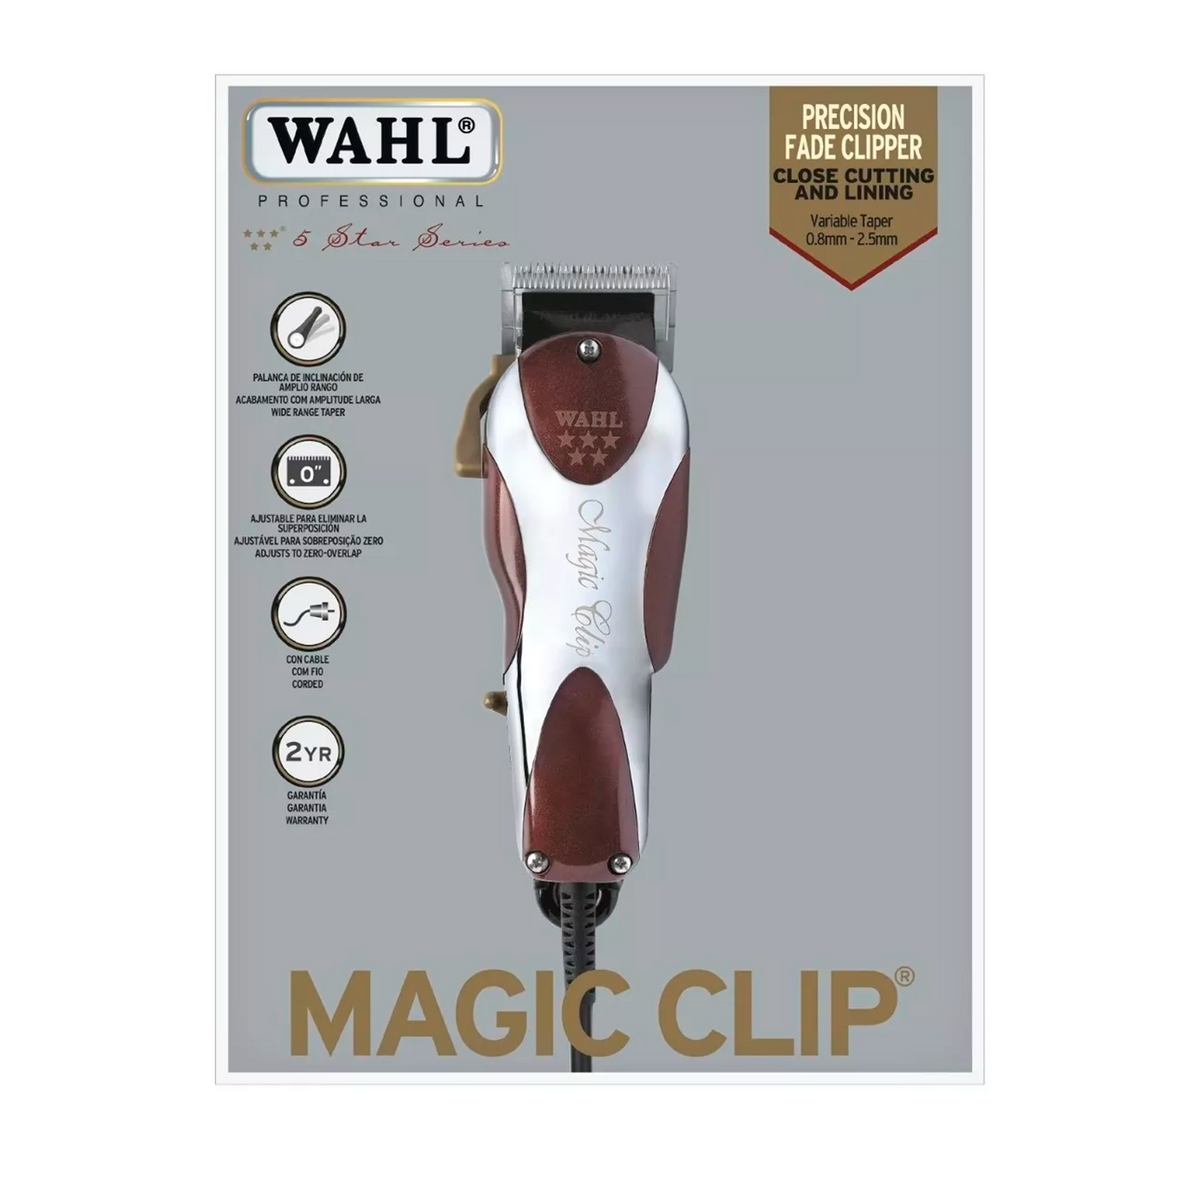 Wahl Magic Clip Inalambrica - Comprar en Mistic